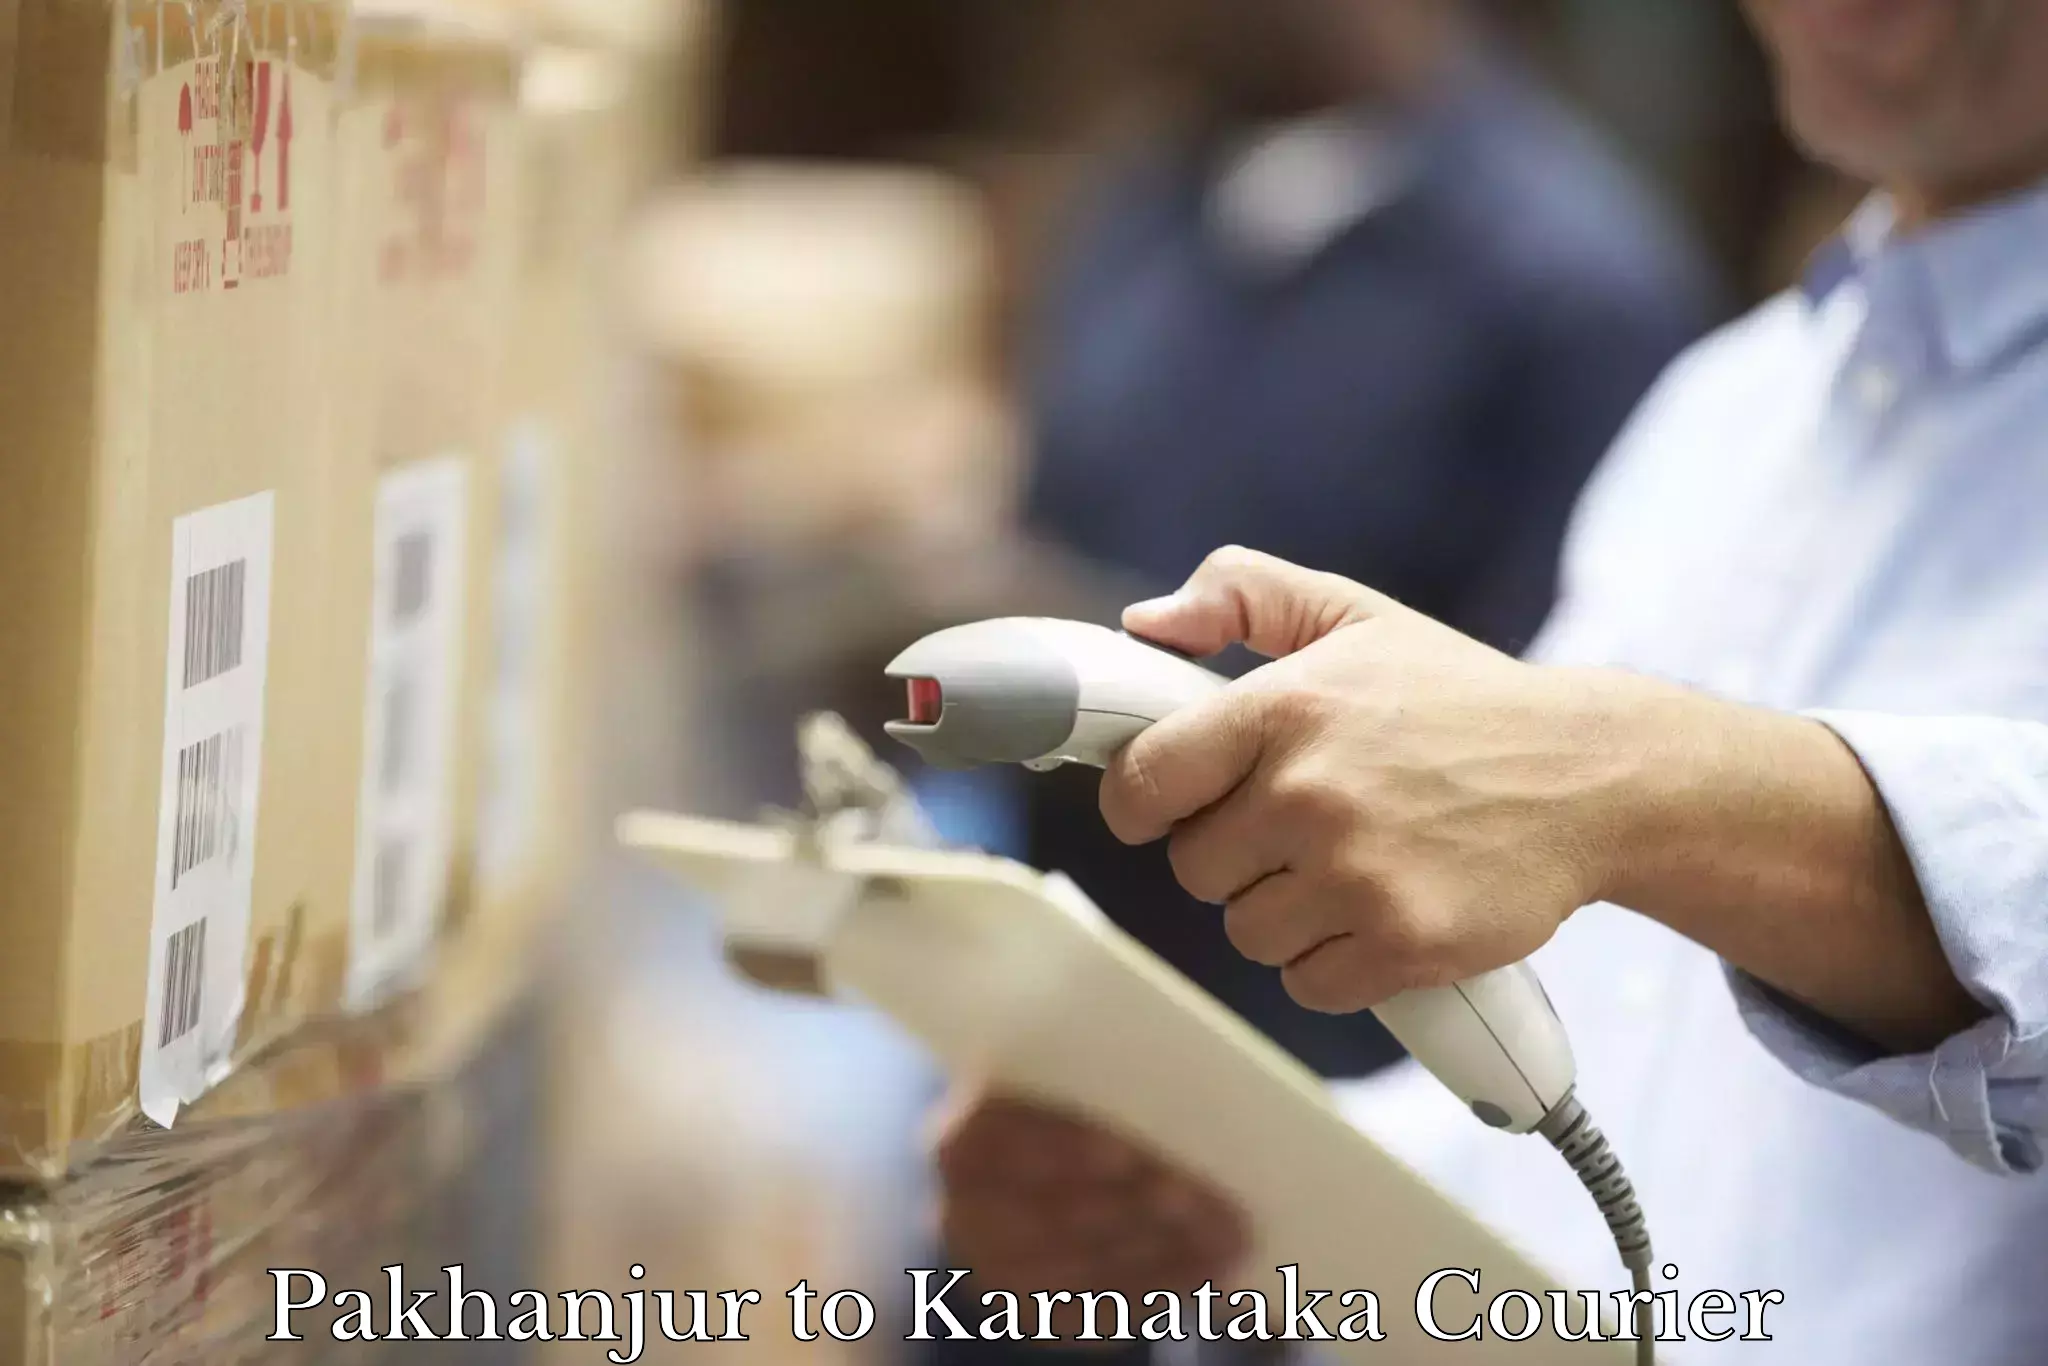 Reliable parcel services Pakhanjur to Karnataka